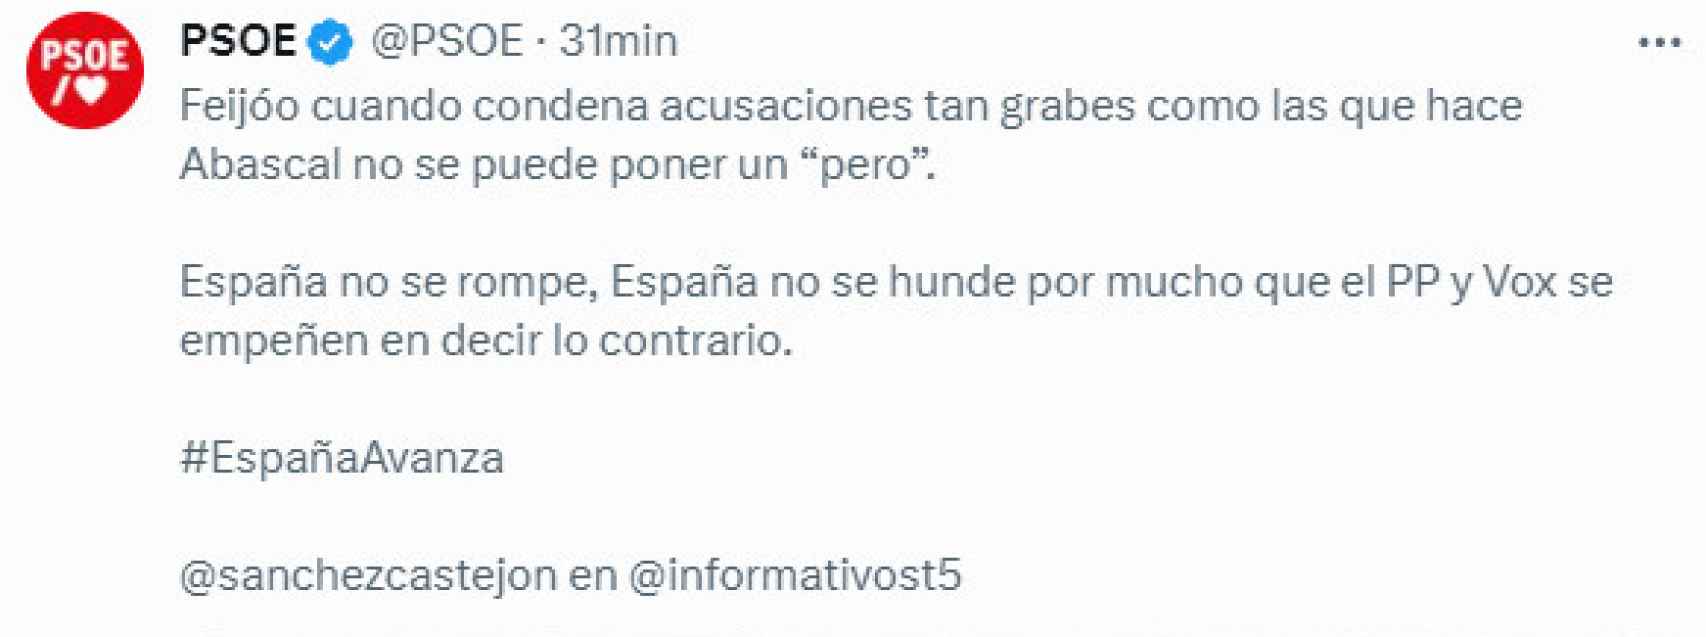 Tuit del PSOE con la falta de ortografía